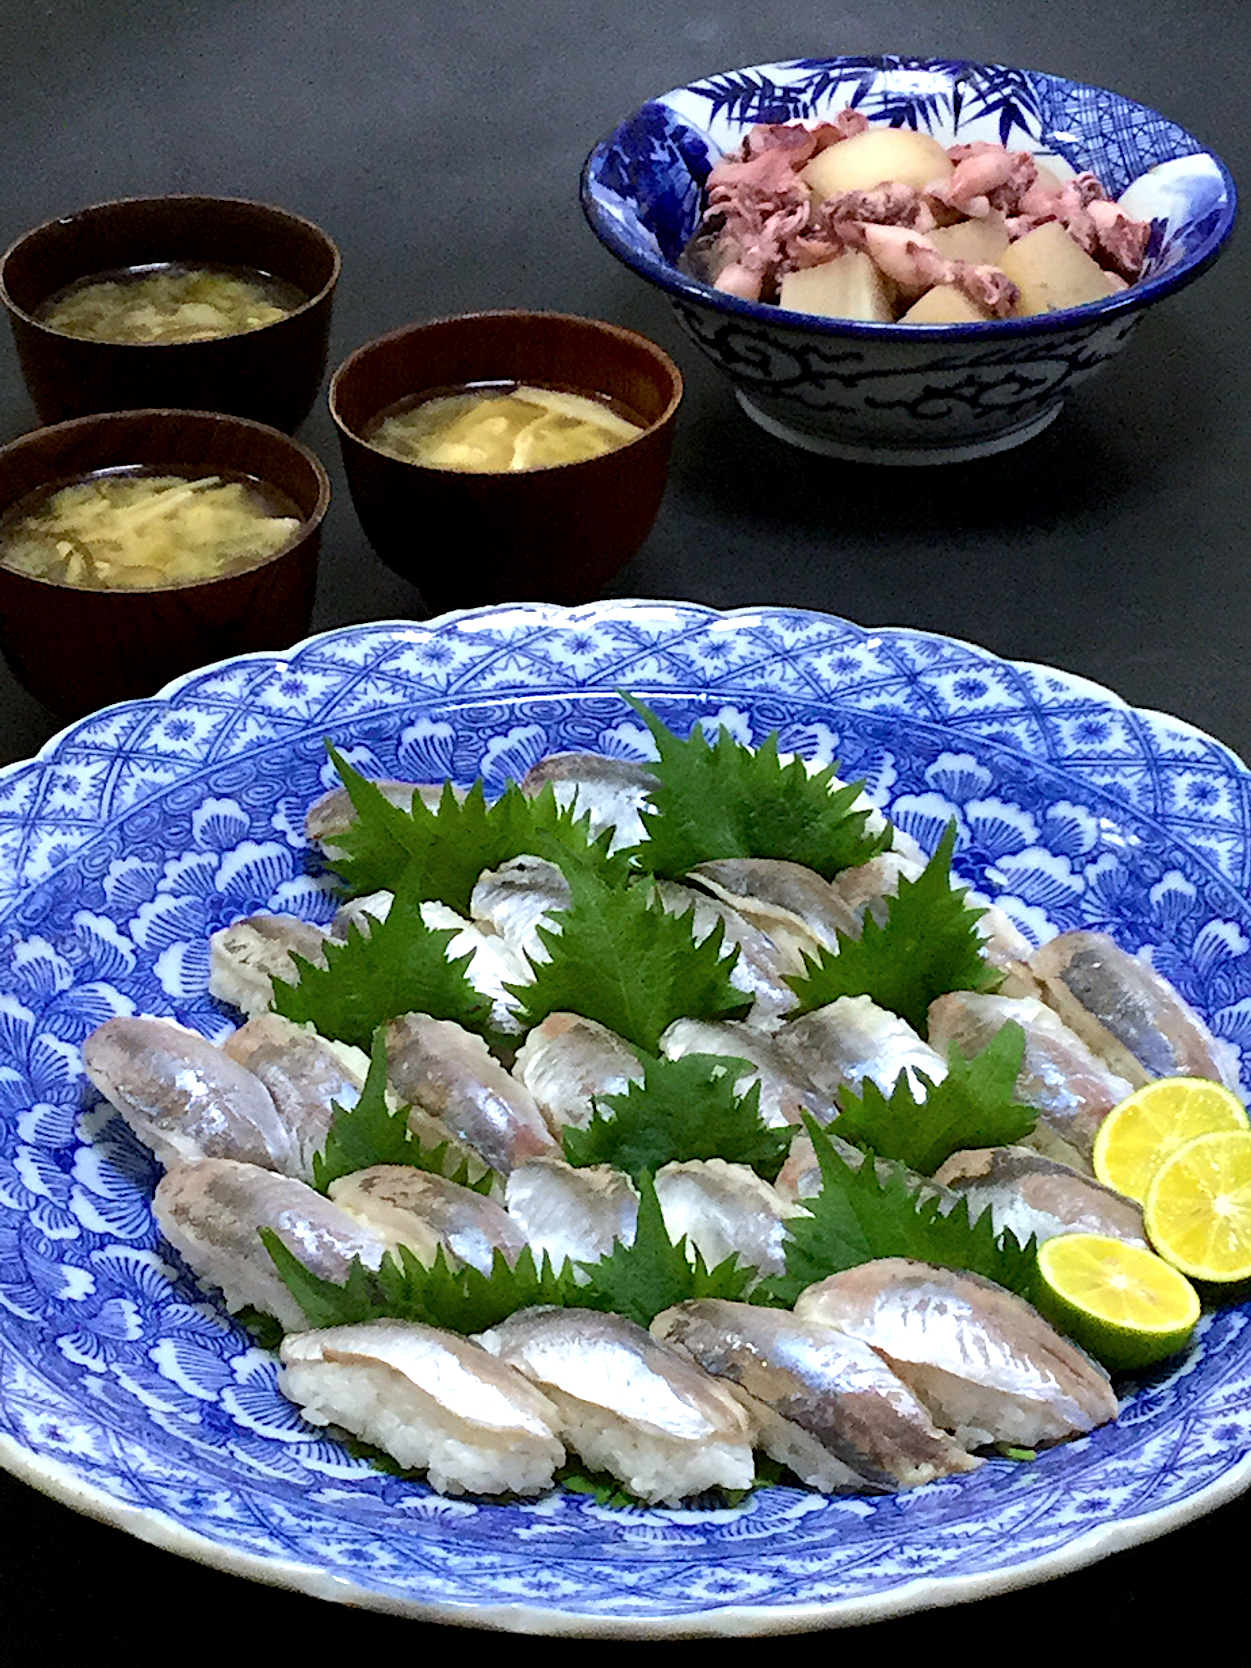 今晩は 小鯵握り寿司 ヒイカと大根の煮物 徳島県産もずくと茸の味噌汁 Akazawa3 Snapdish スナップディッシュ Id Fzkota